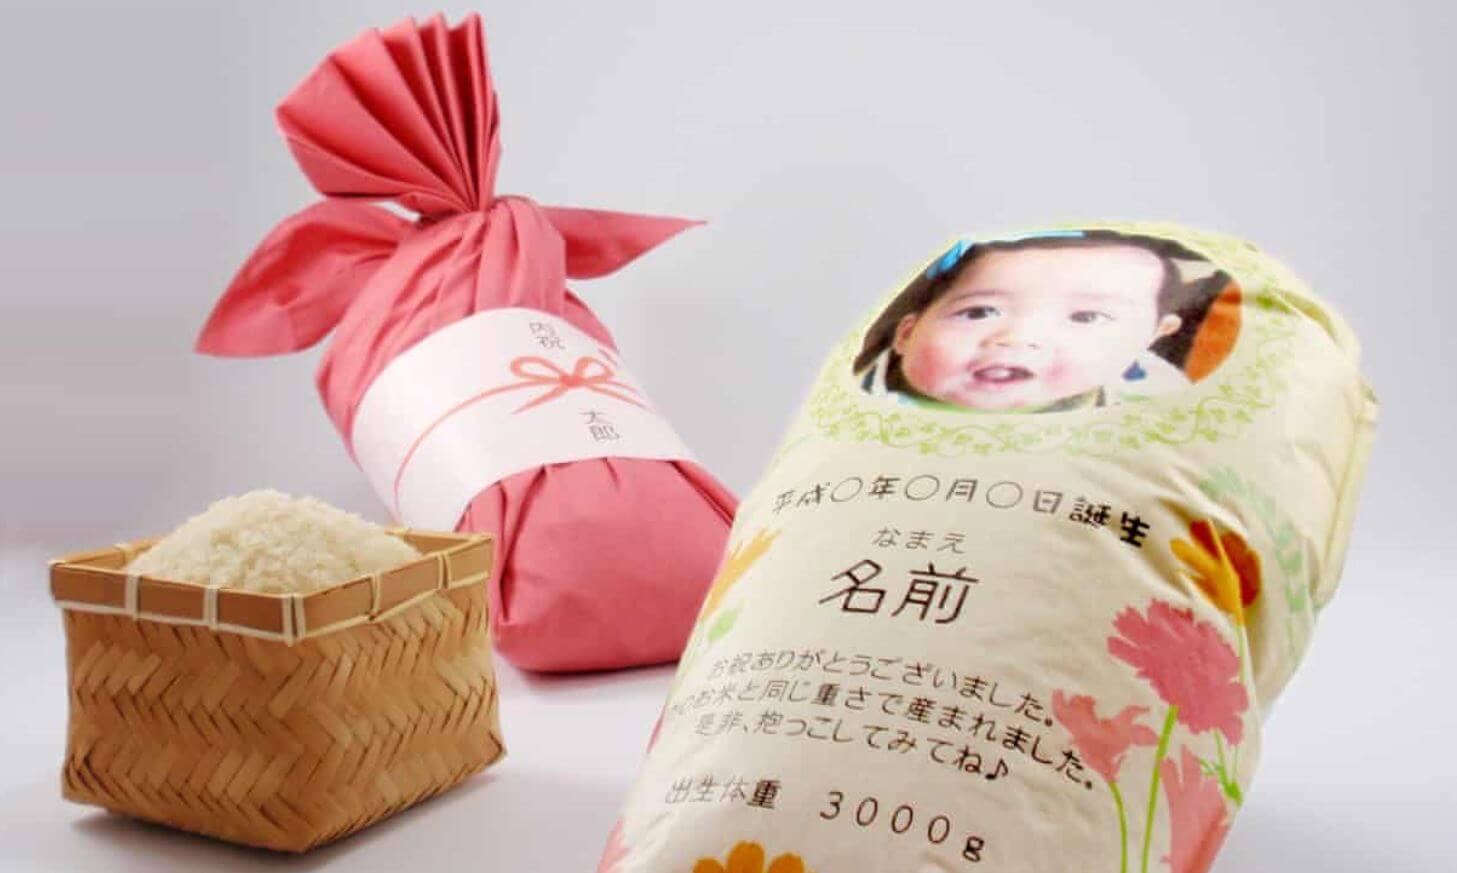 Geschenk von Eltern: Sie verschicken Reissäcke, die aussehen wie ihr Baby